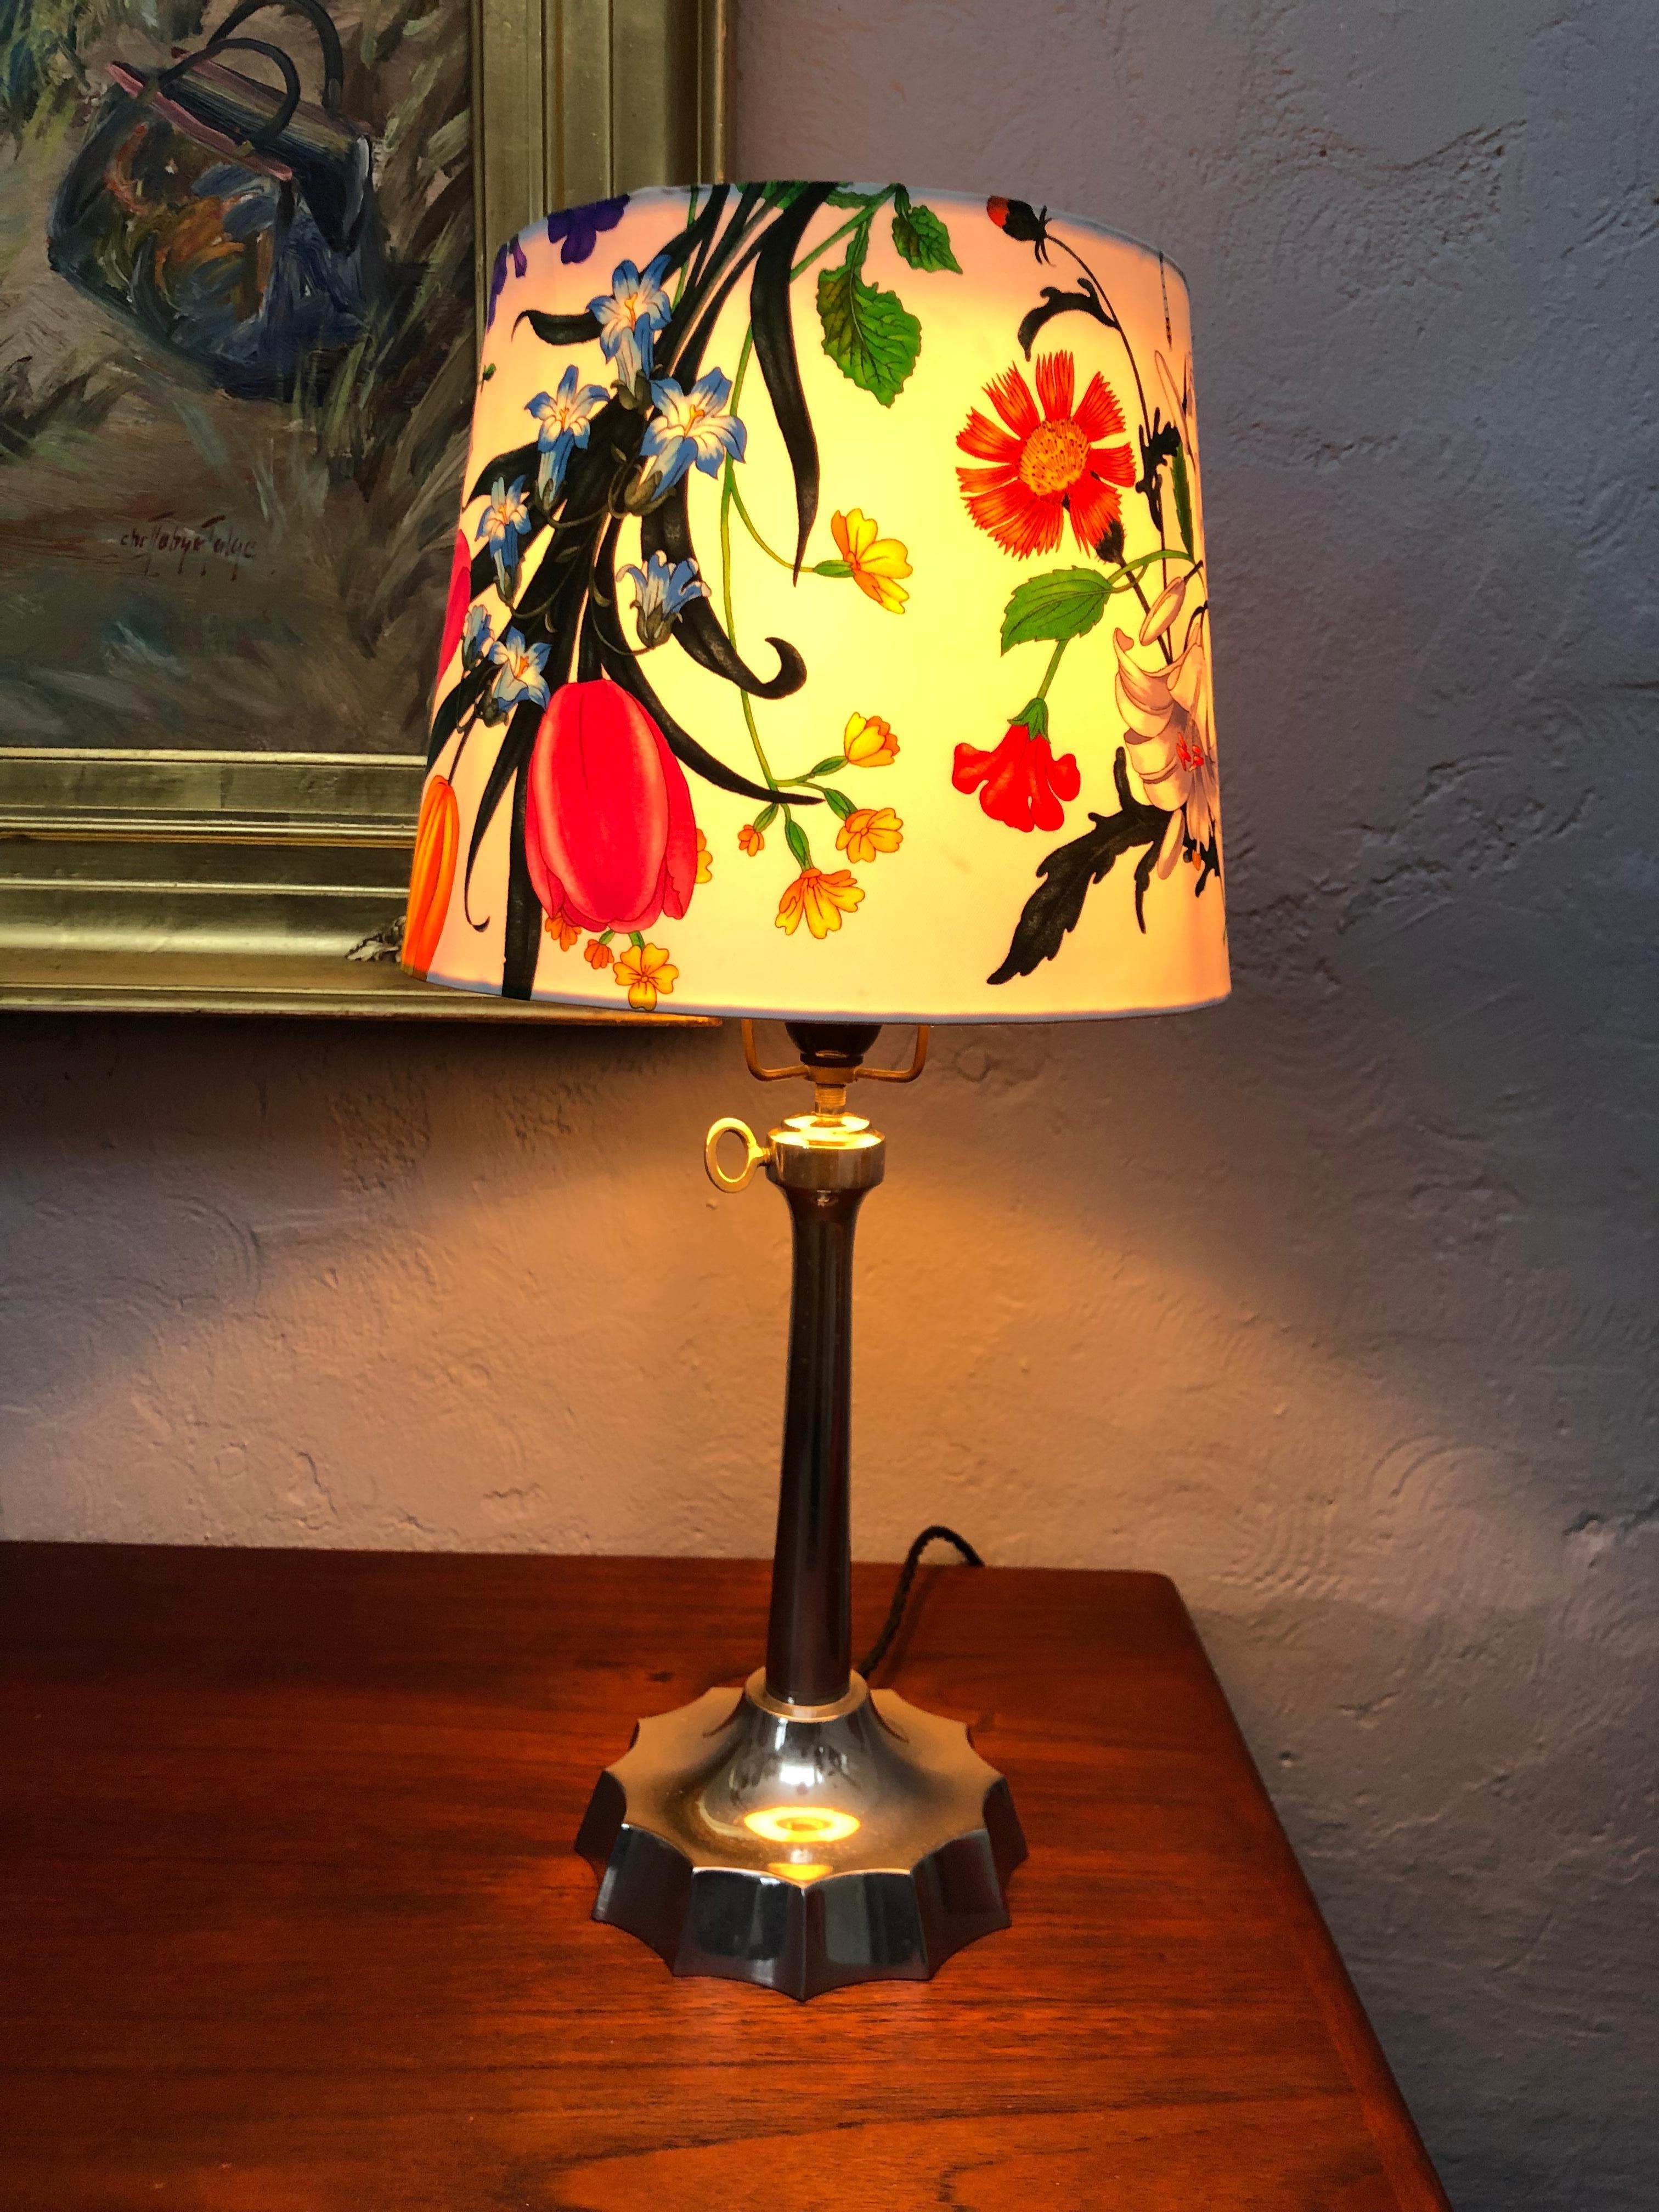 Eine antike Art-Déco-Tischlampe mit leicht brutalistischen Tönen.
Aus Aluminiumguss mit einstellbarer Höhe von 50-60cm.
Die Entdeckung des Aluminiums wurde 1825 vom dänischen Physiker Hans Christian Ørsted bekannt gegeben.
Die Lampe ist komplett